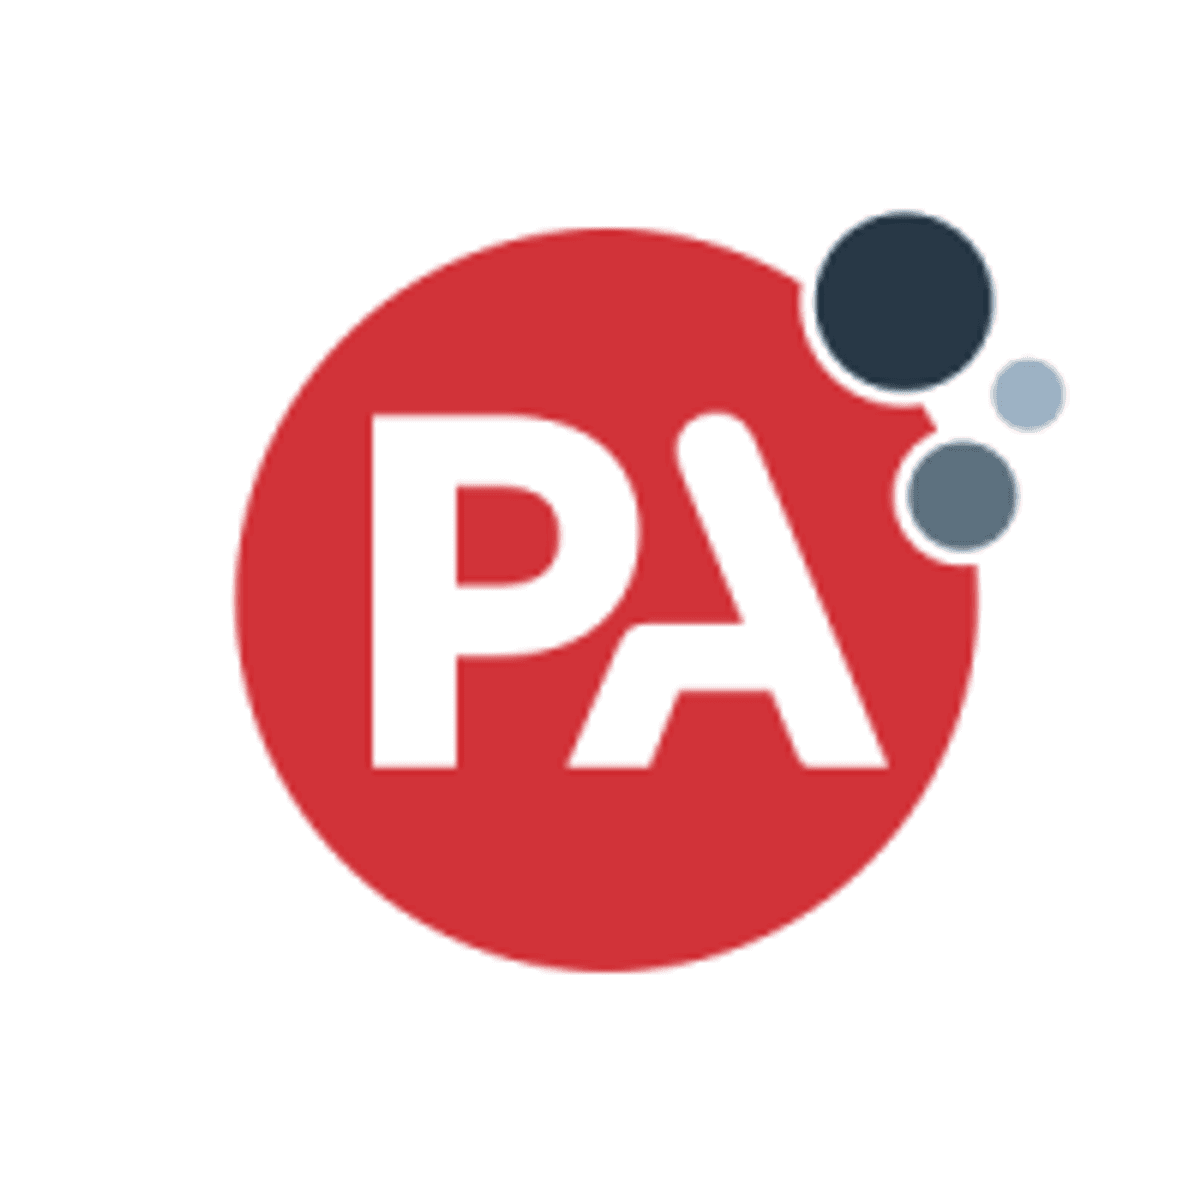 PA Consulting ondersteunt talent uit kansarme groepen met stichting image